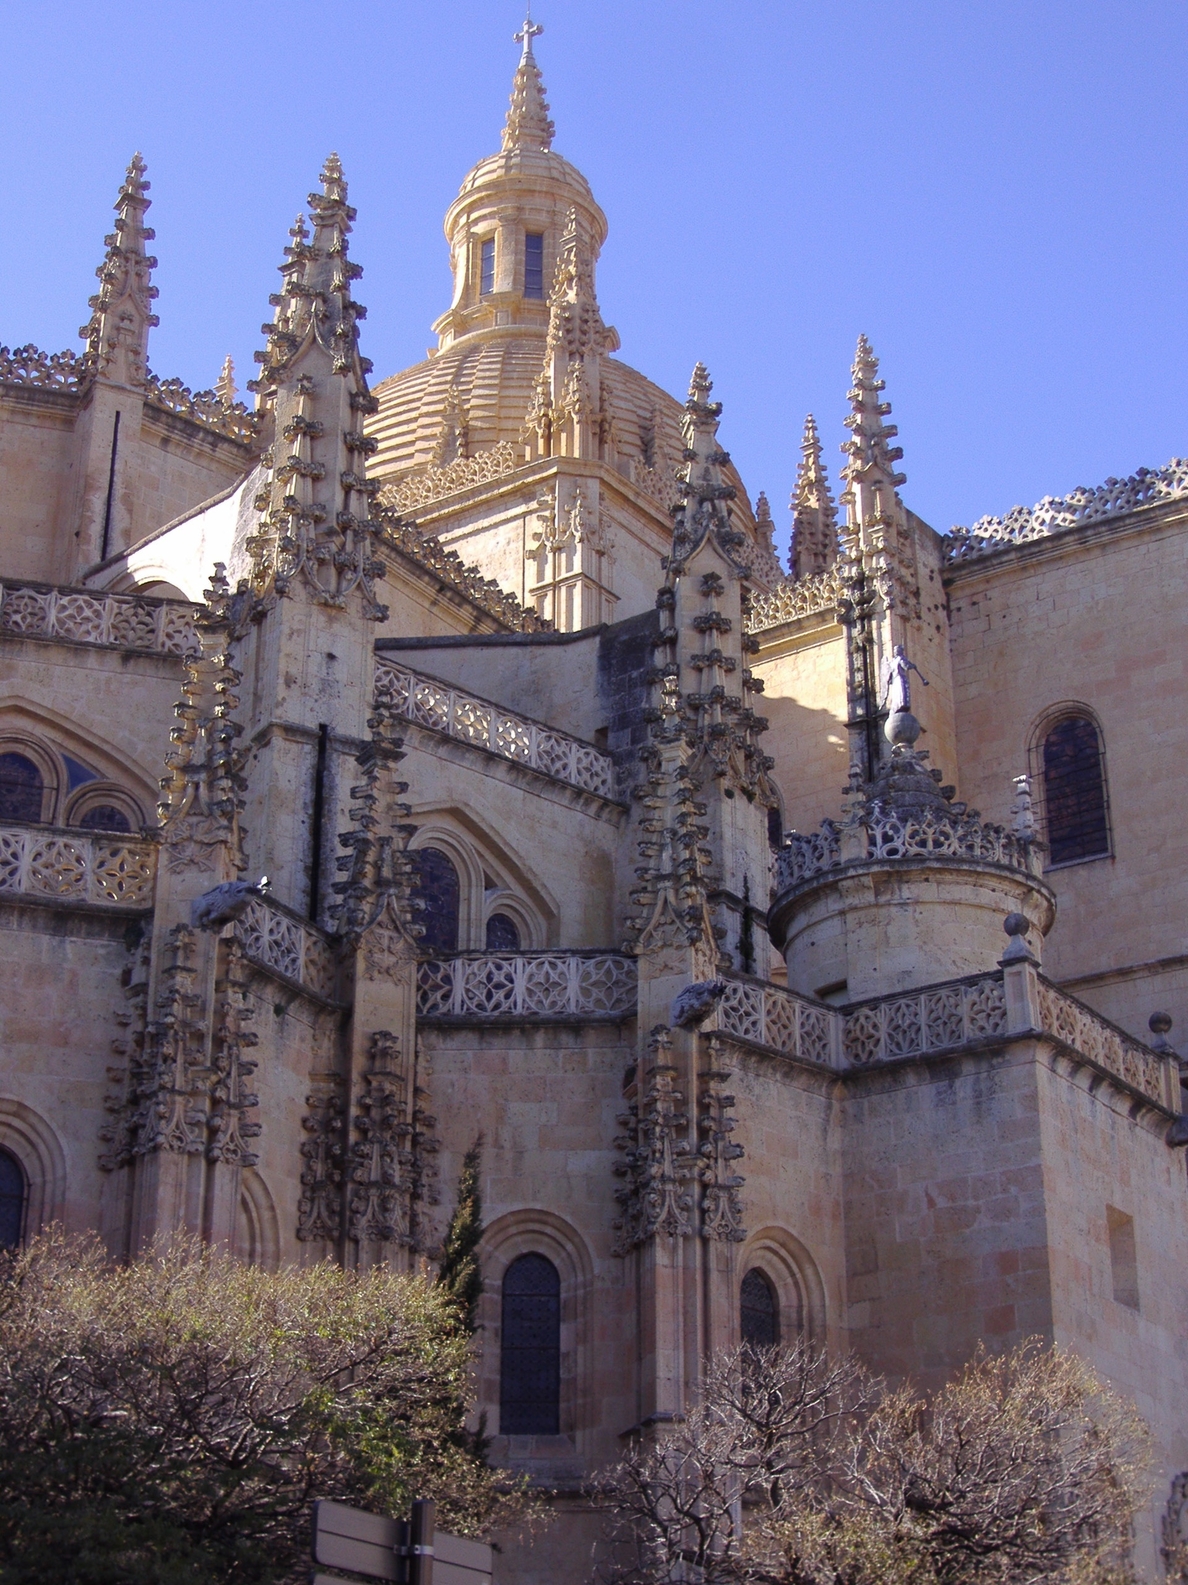 La Catedral de Segovia exhibe el túmulo funerario con el que se celebraban las exequias en la seo